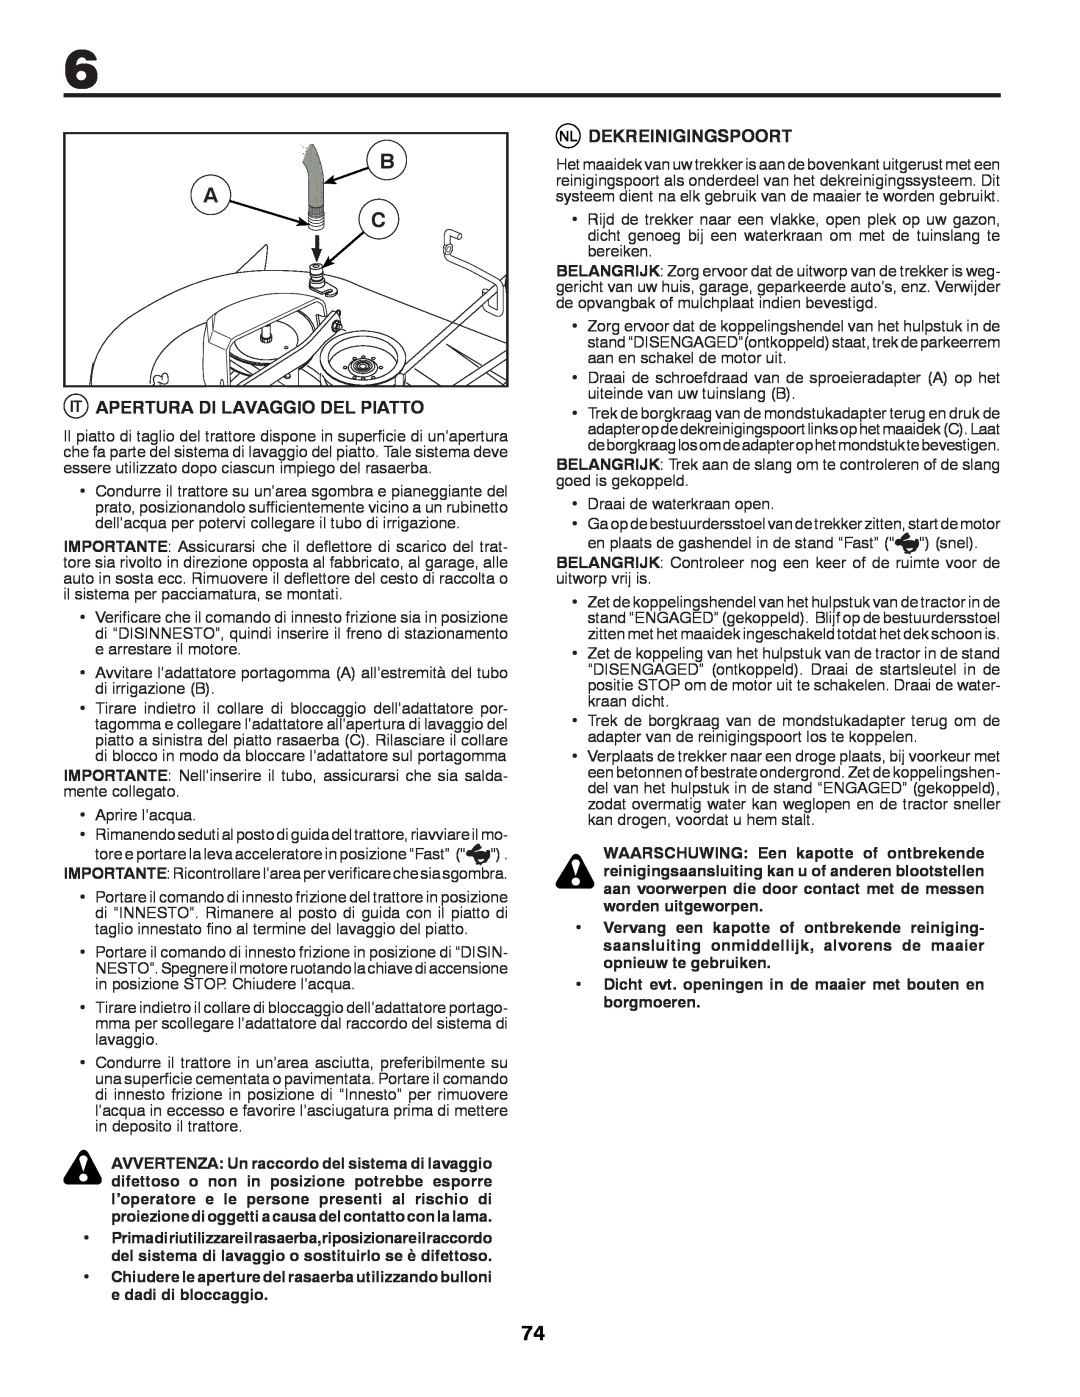 McCulloch 532 43 37-12 Rev. 1 instruction manual B A C, Apertura Di Lavaggio Del Piatto, Dekreinigingspoort 